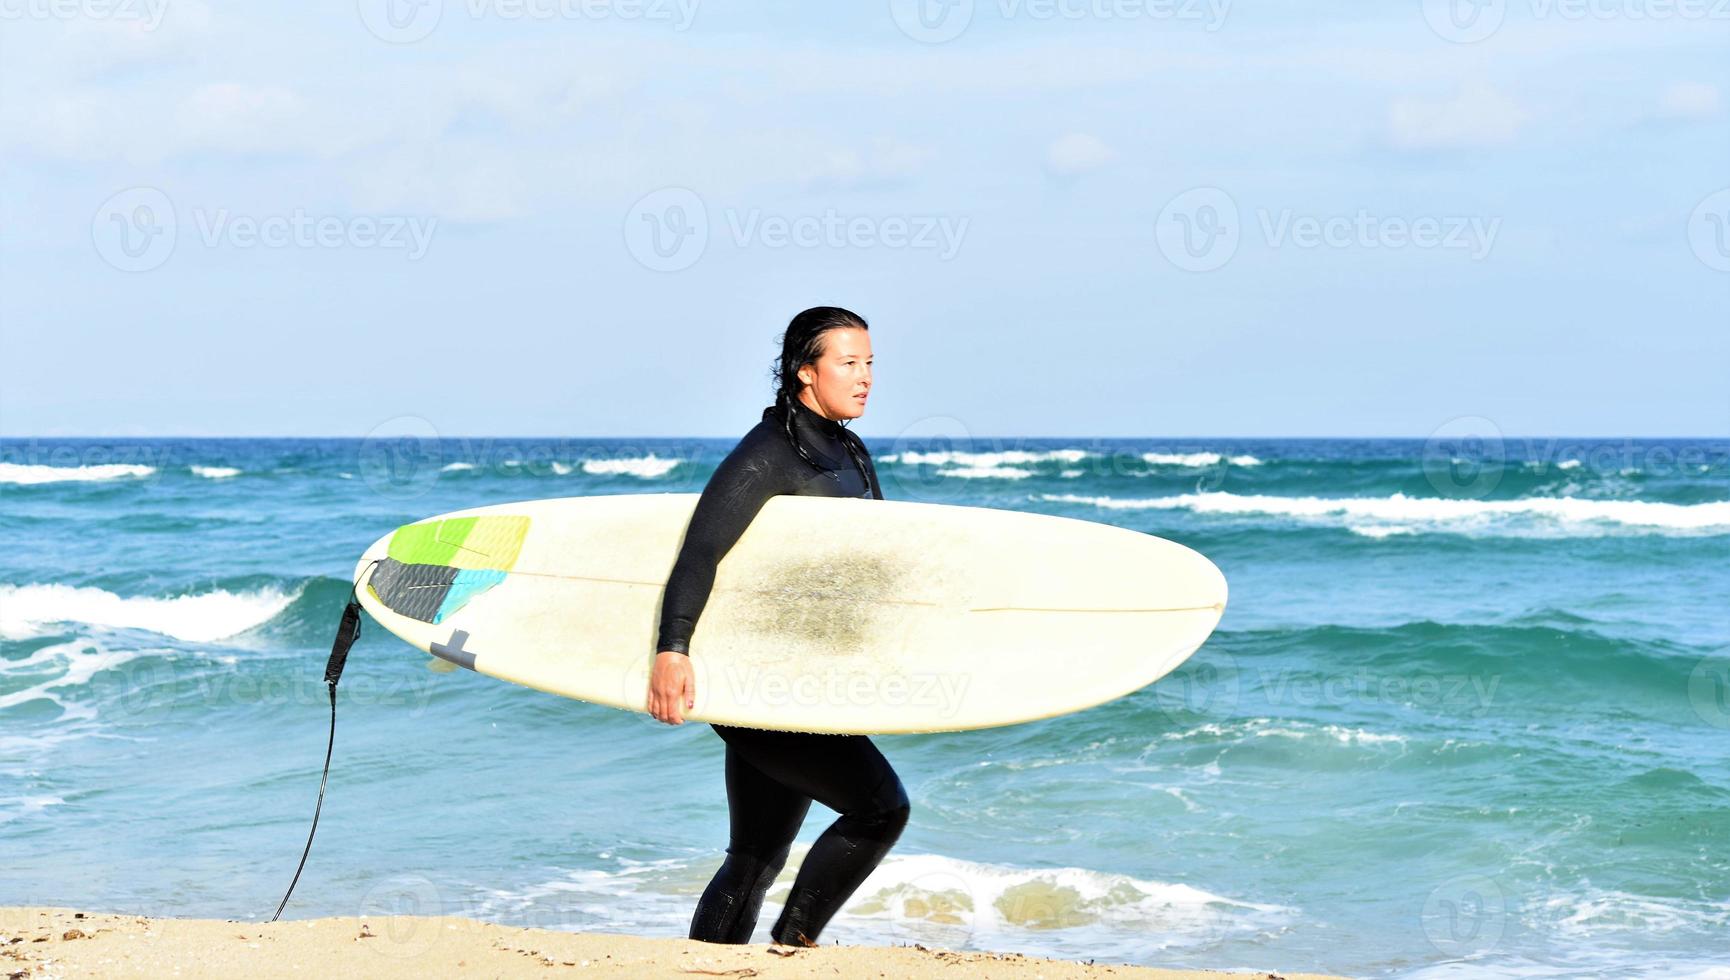 hermosa surfista sexy en la playa foto